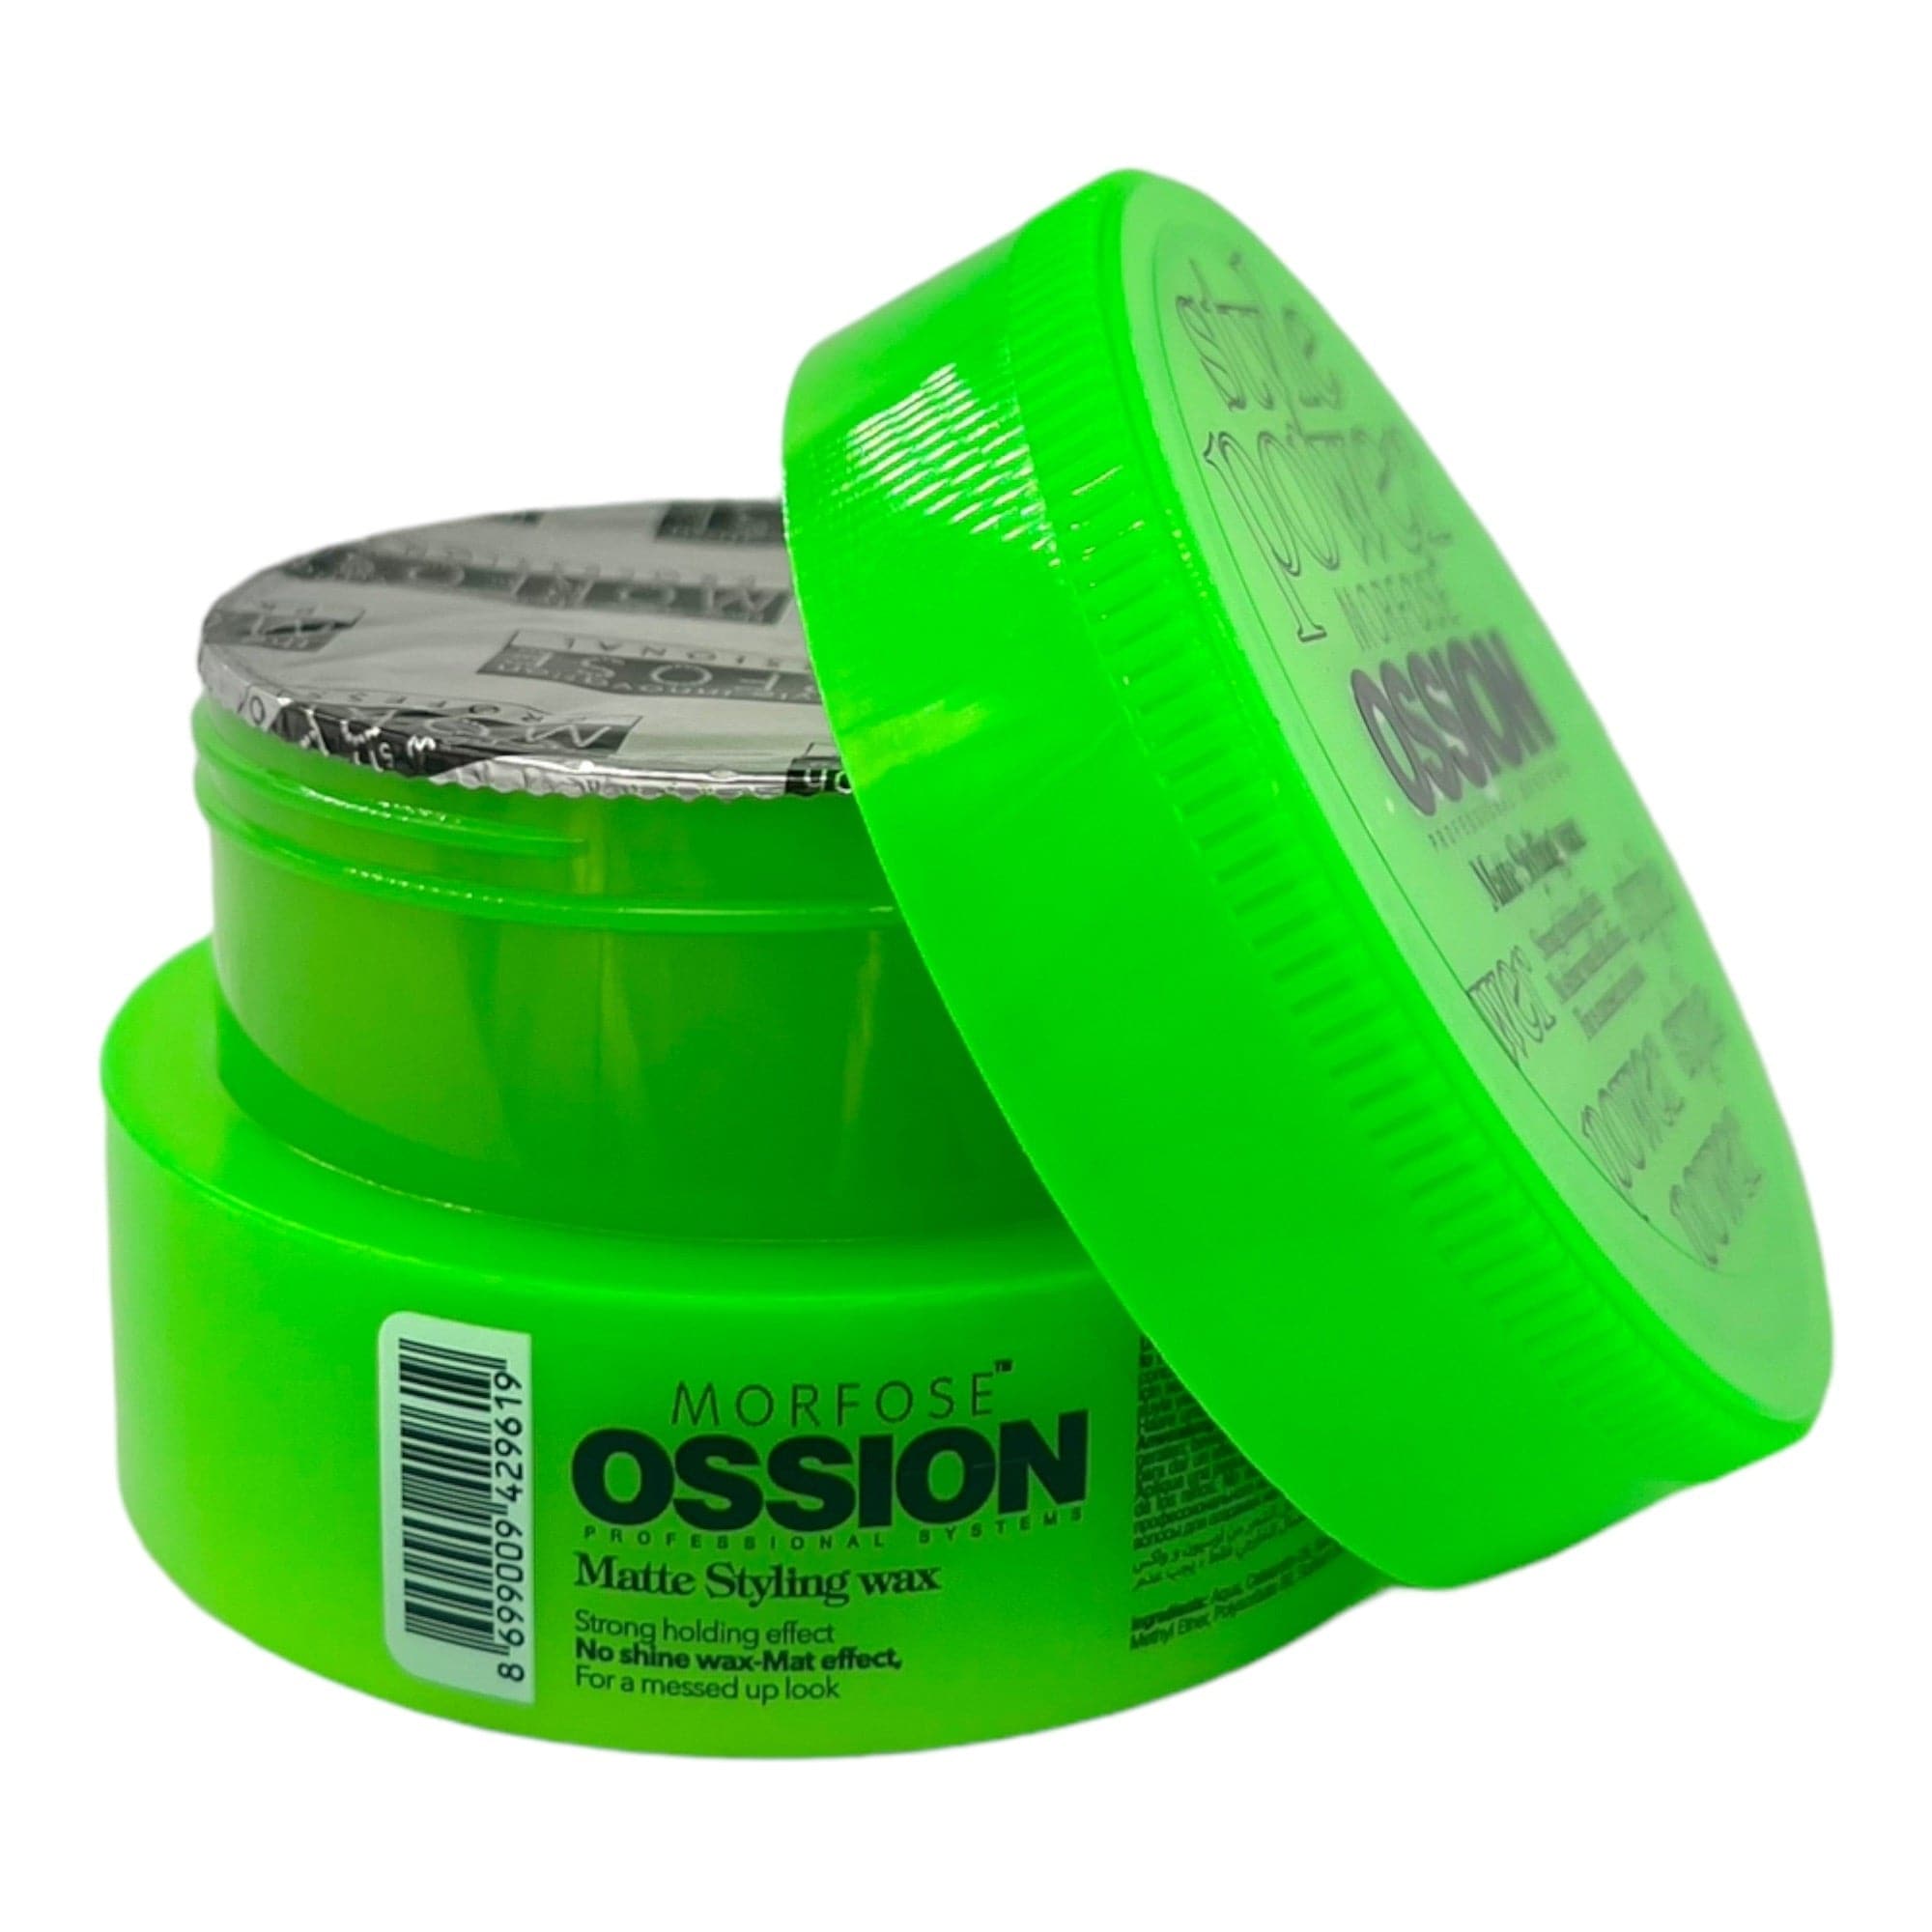 Morfose - Ossion Matte Styling Wax 100ml